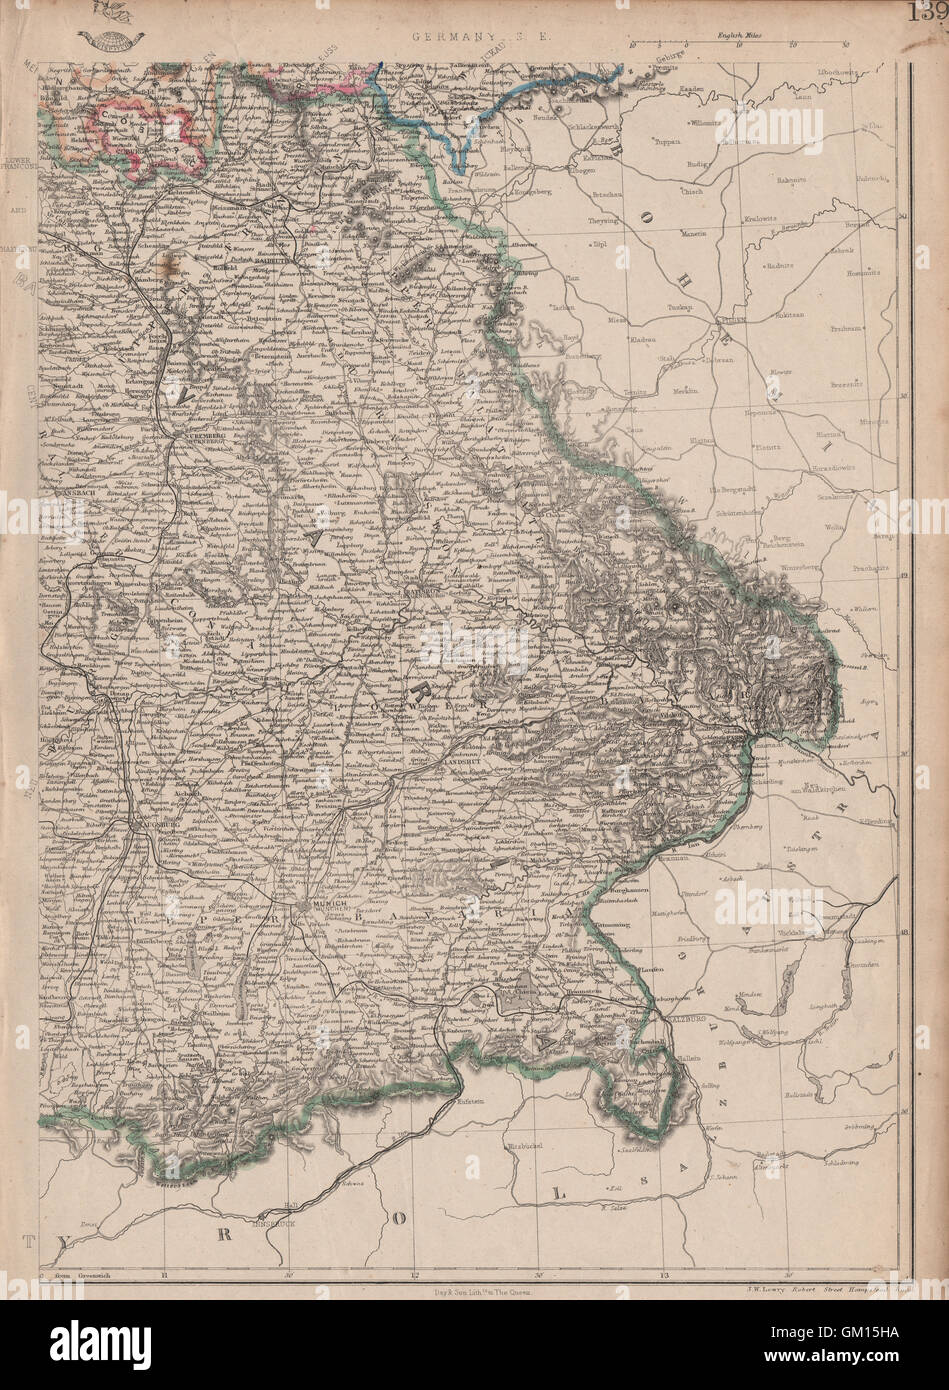 Sud-est de l'Allemagne. Bavière Bayern. Chemins de fer. Munchen Munich. JW Lowry, 1863 map Banque D'Images